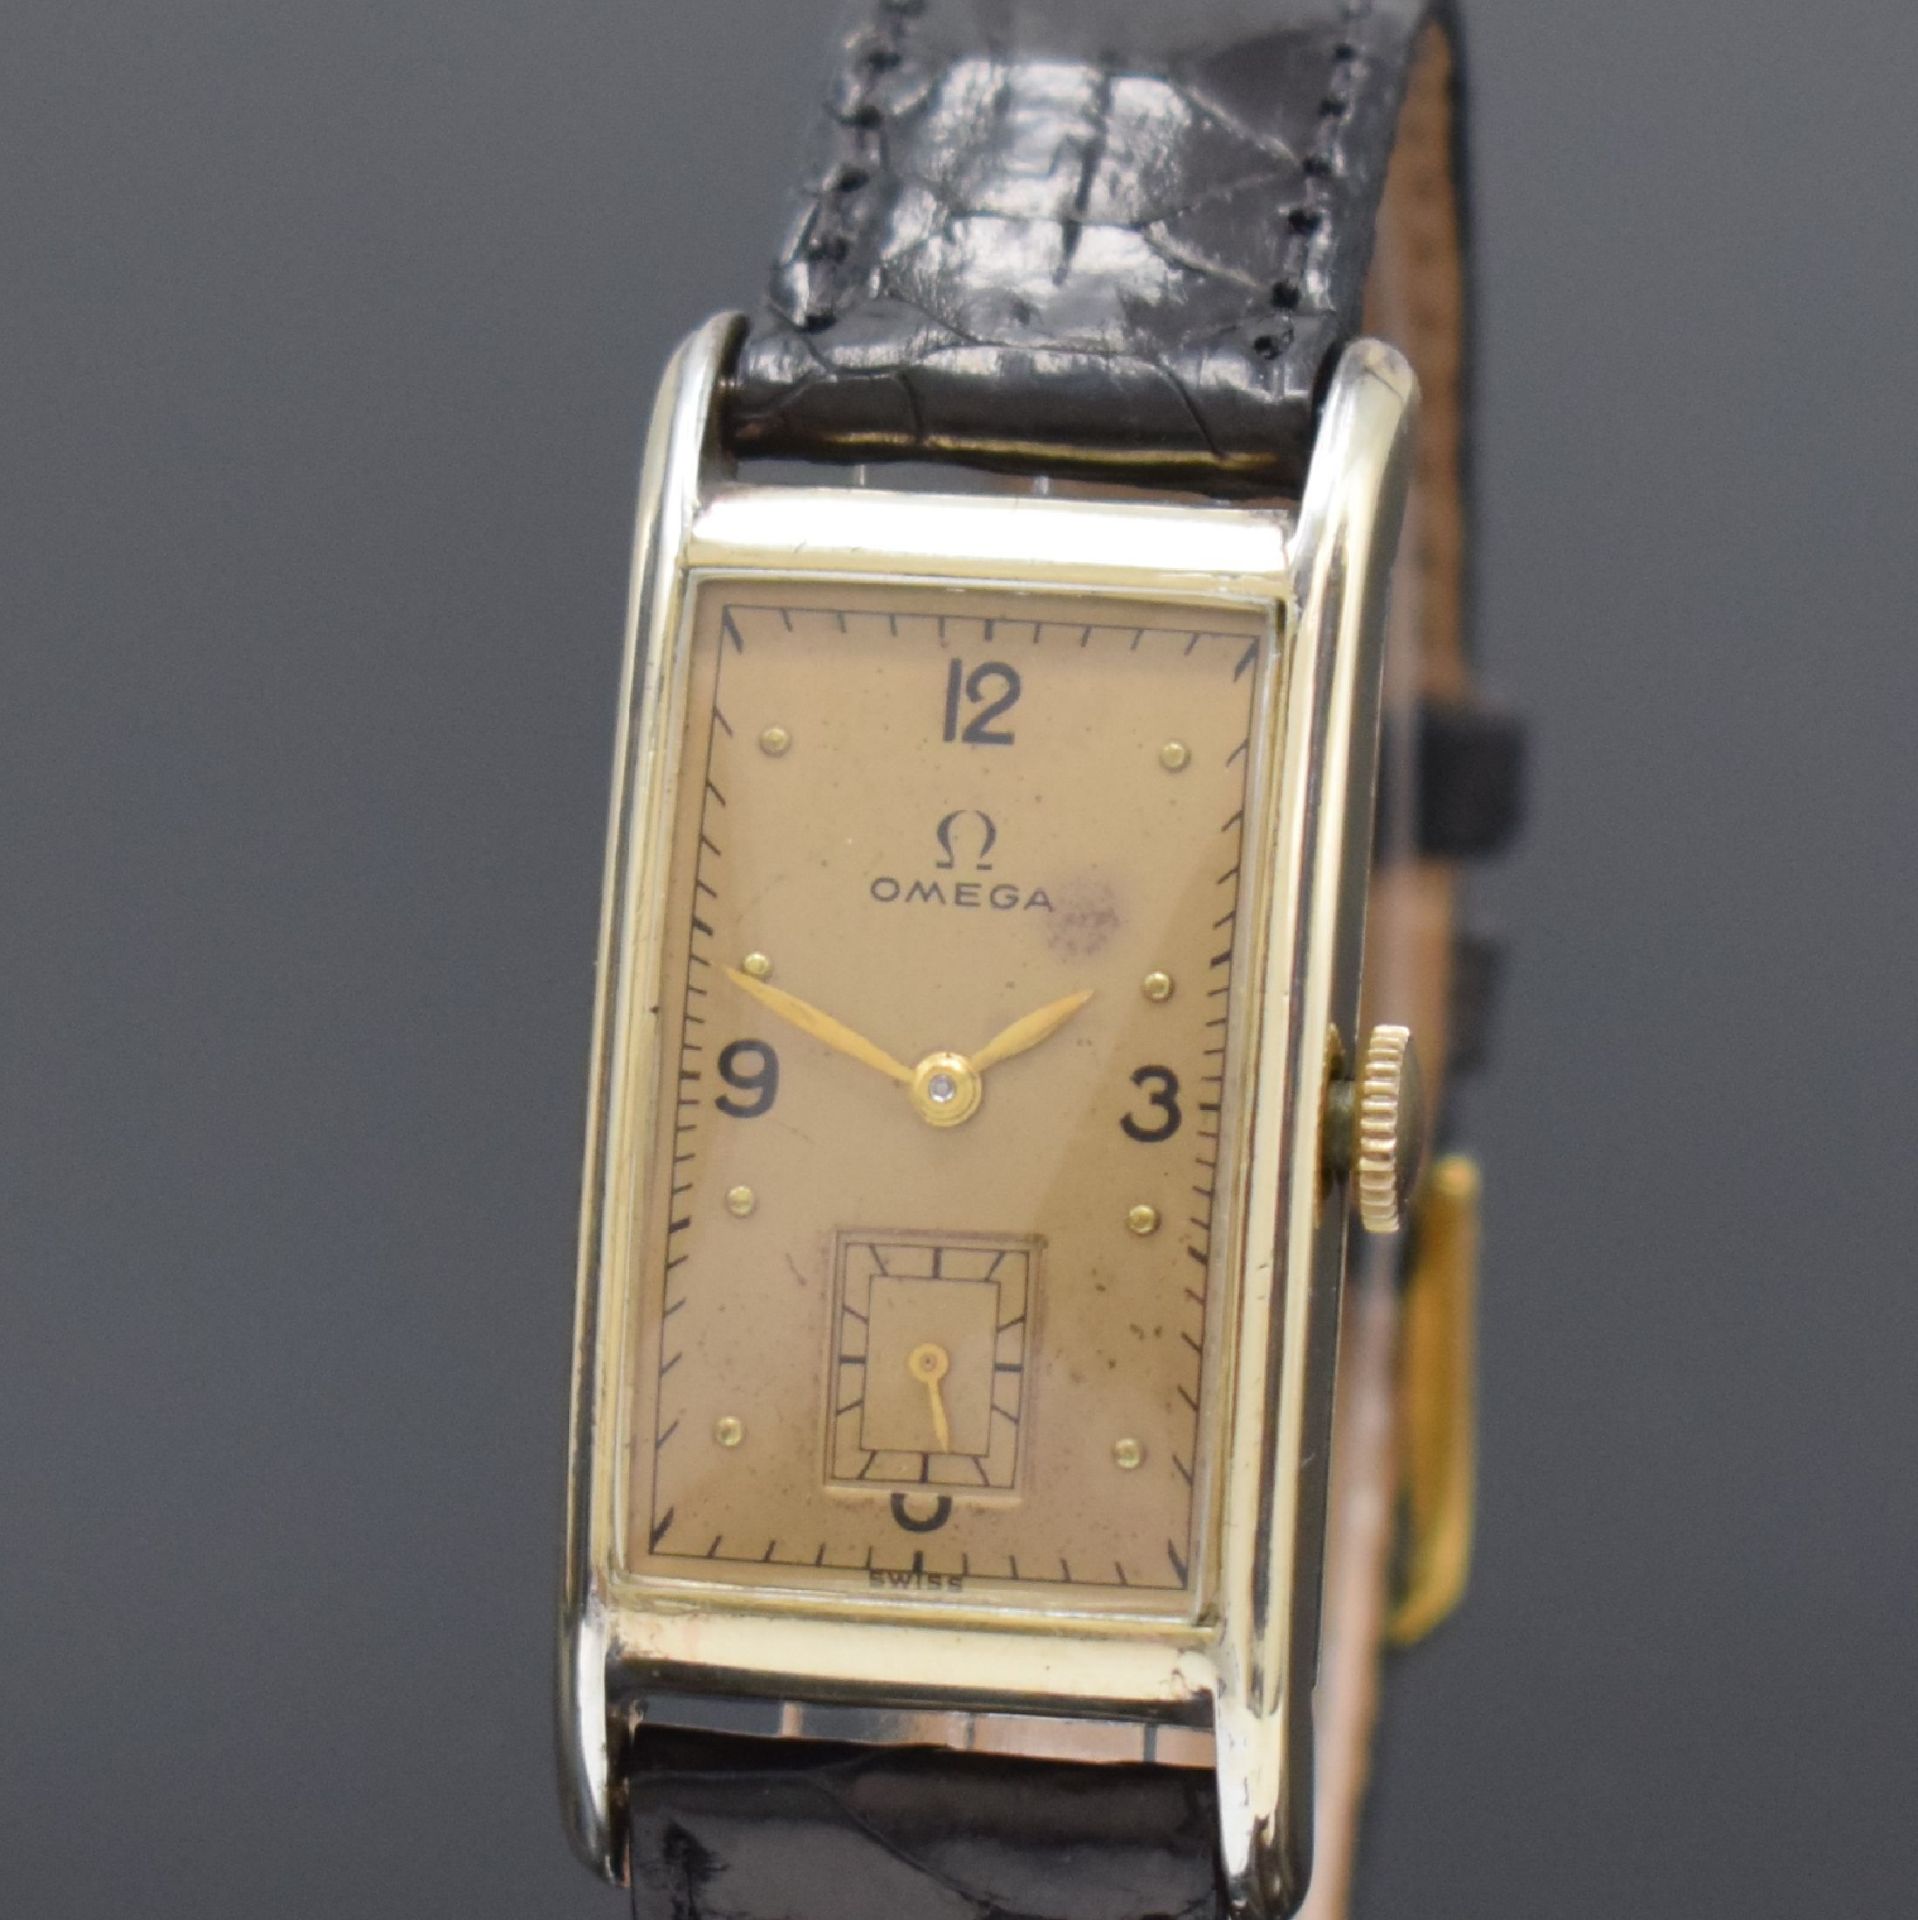 OMEGA T 17 rechteckige Armbanduhr in 14k goldfilled, - Image 2 of 7